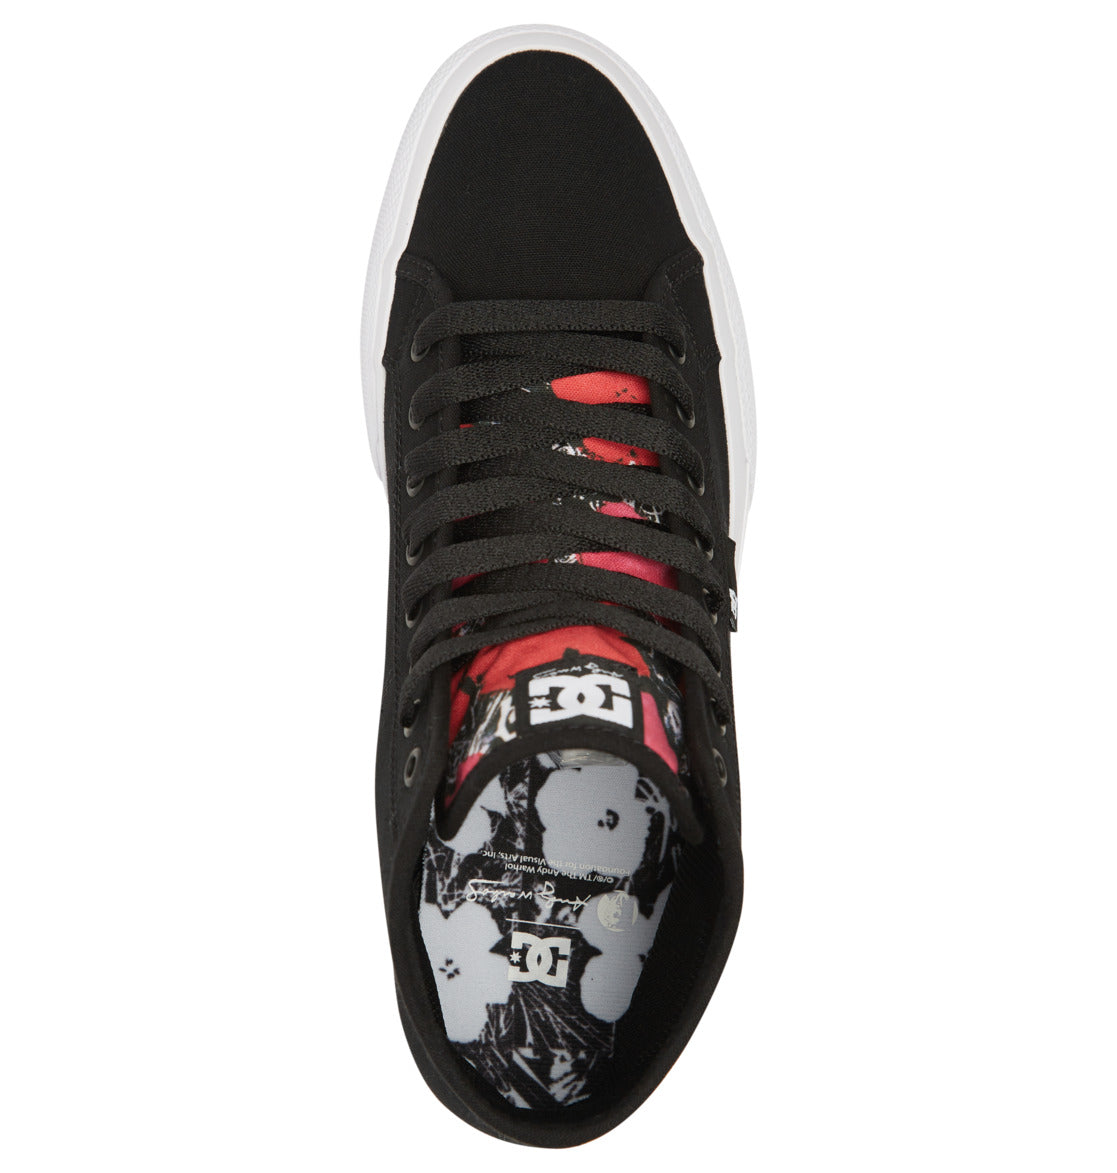 DC X Andy Warhol Manual Hi Shoe Black White Red Top